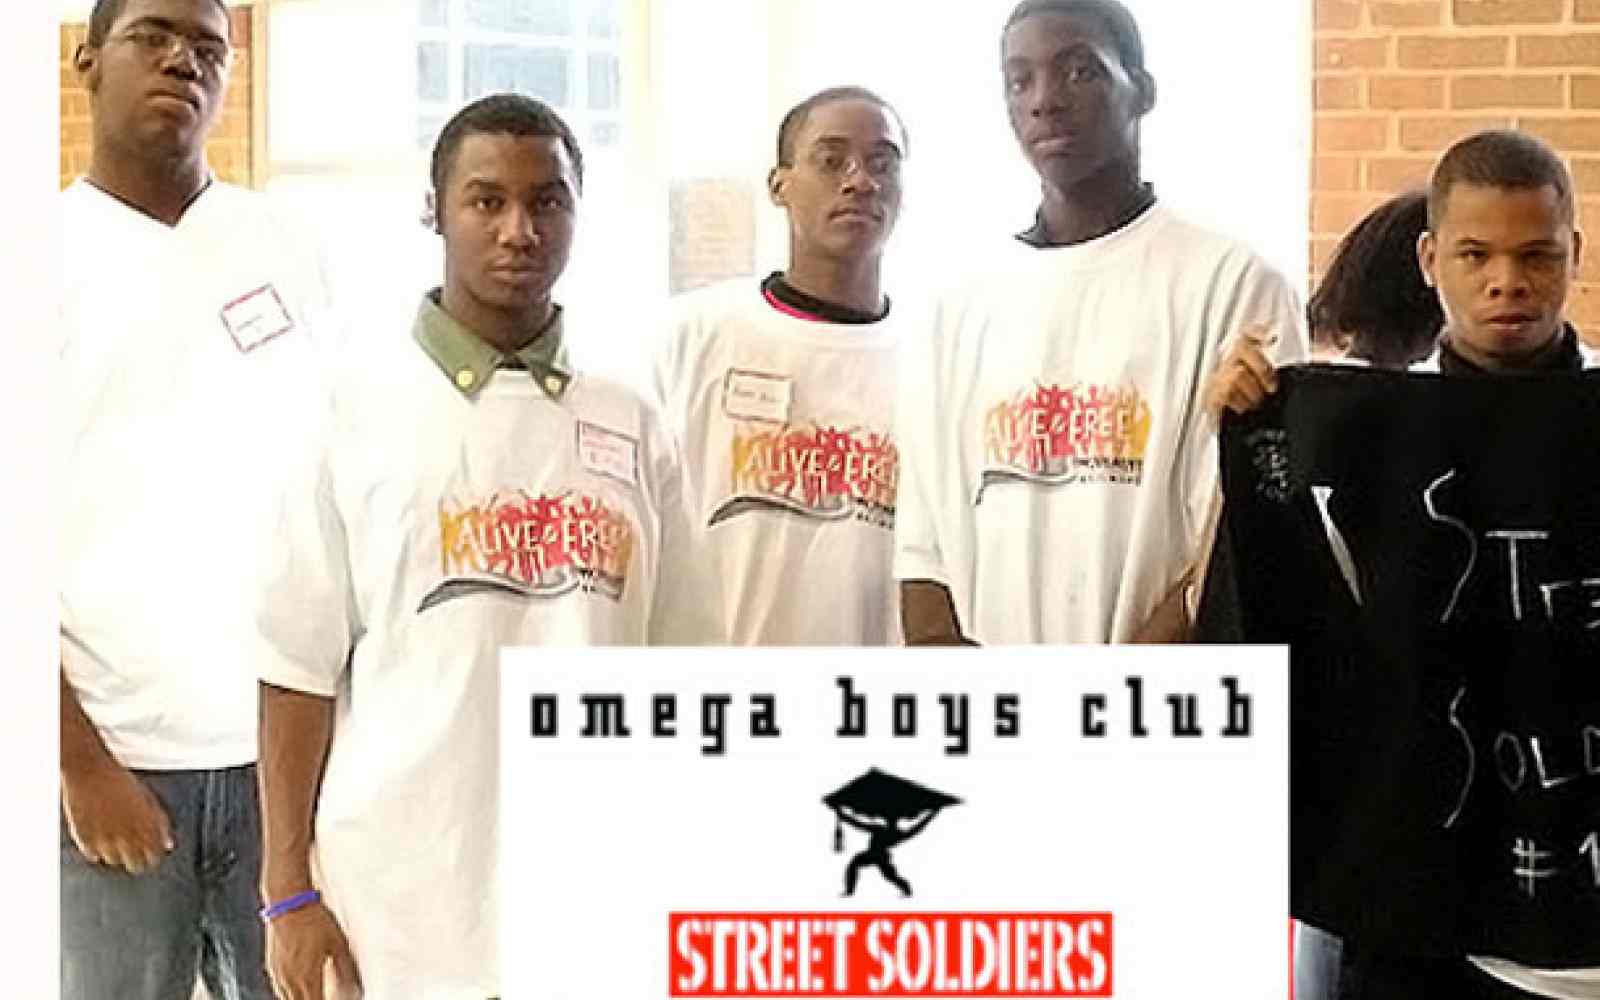 Omega Boys Club